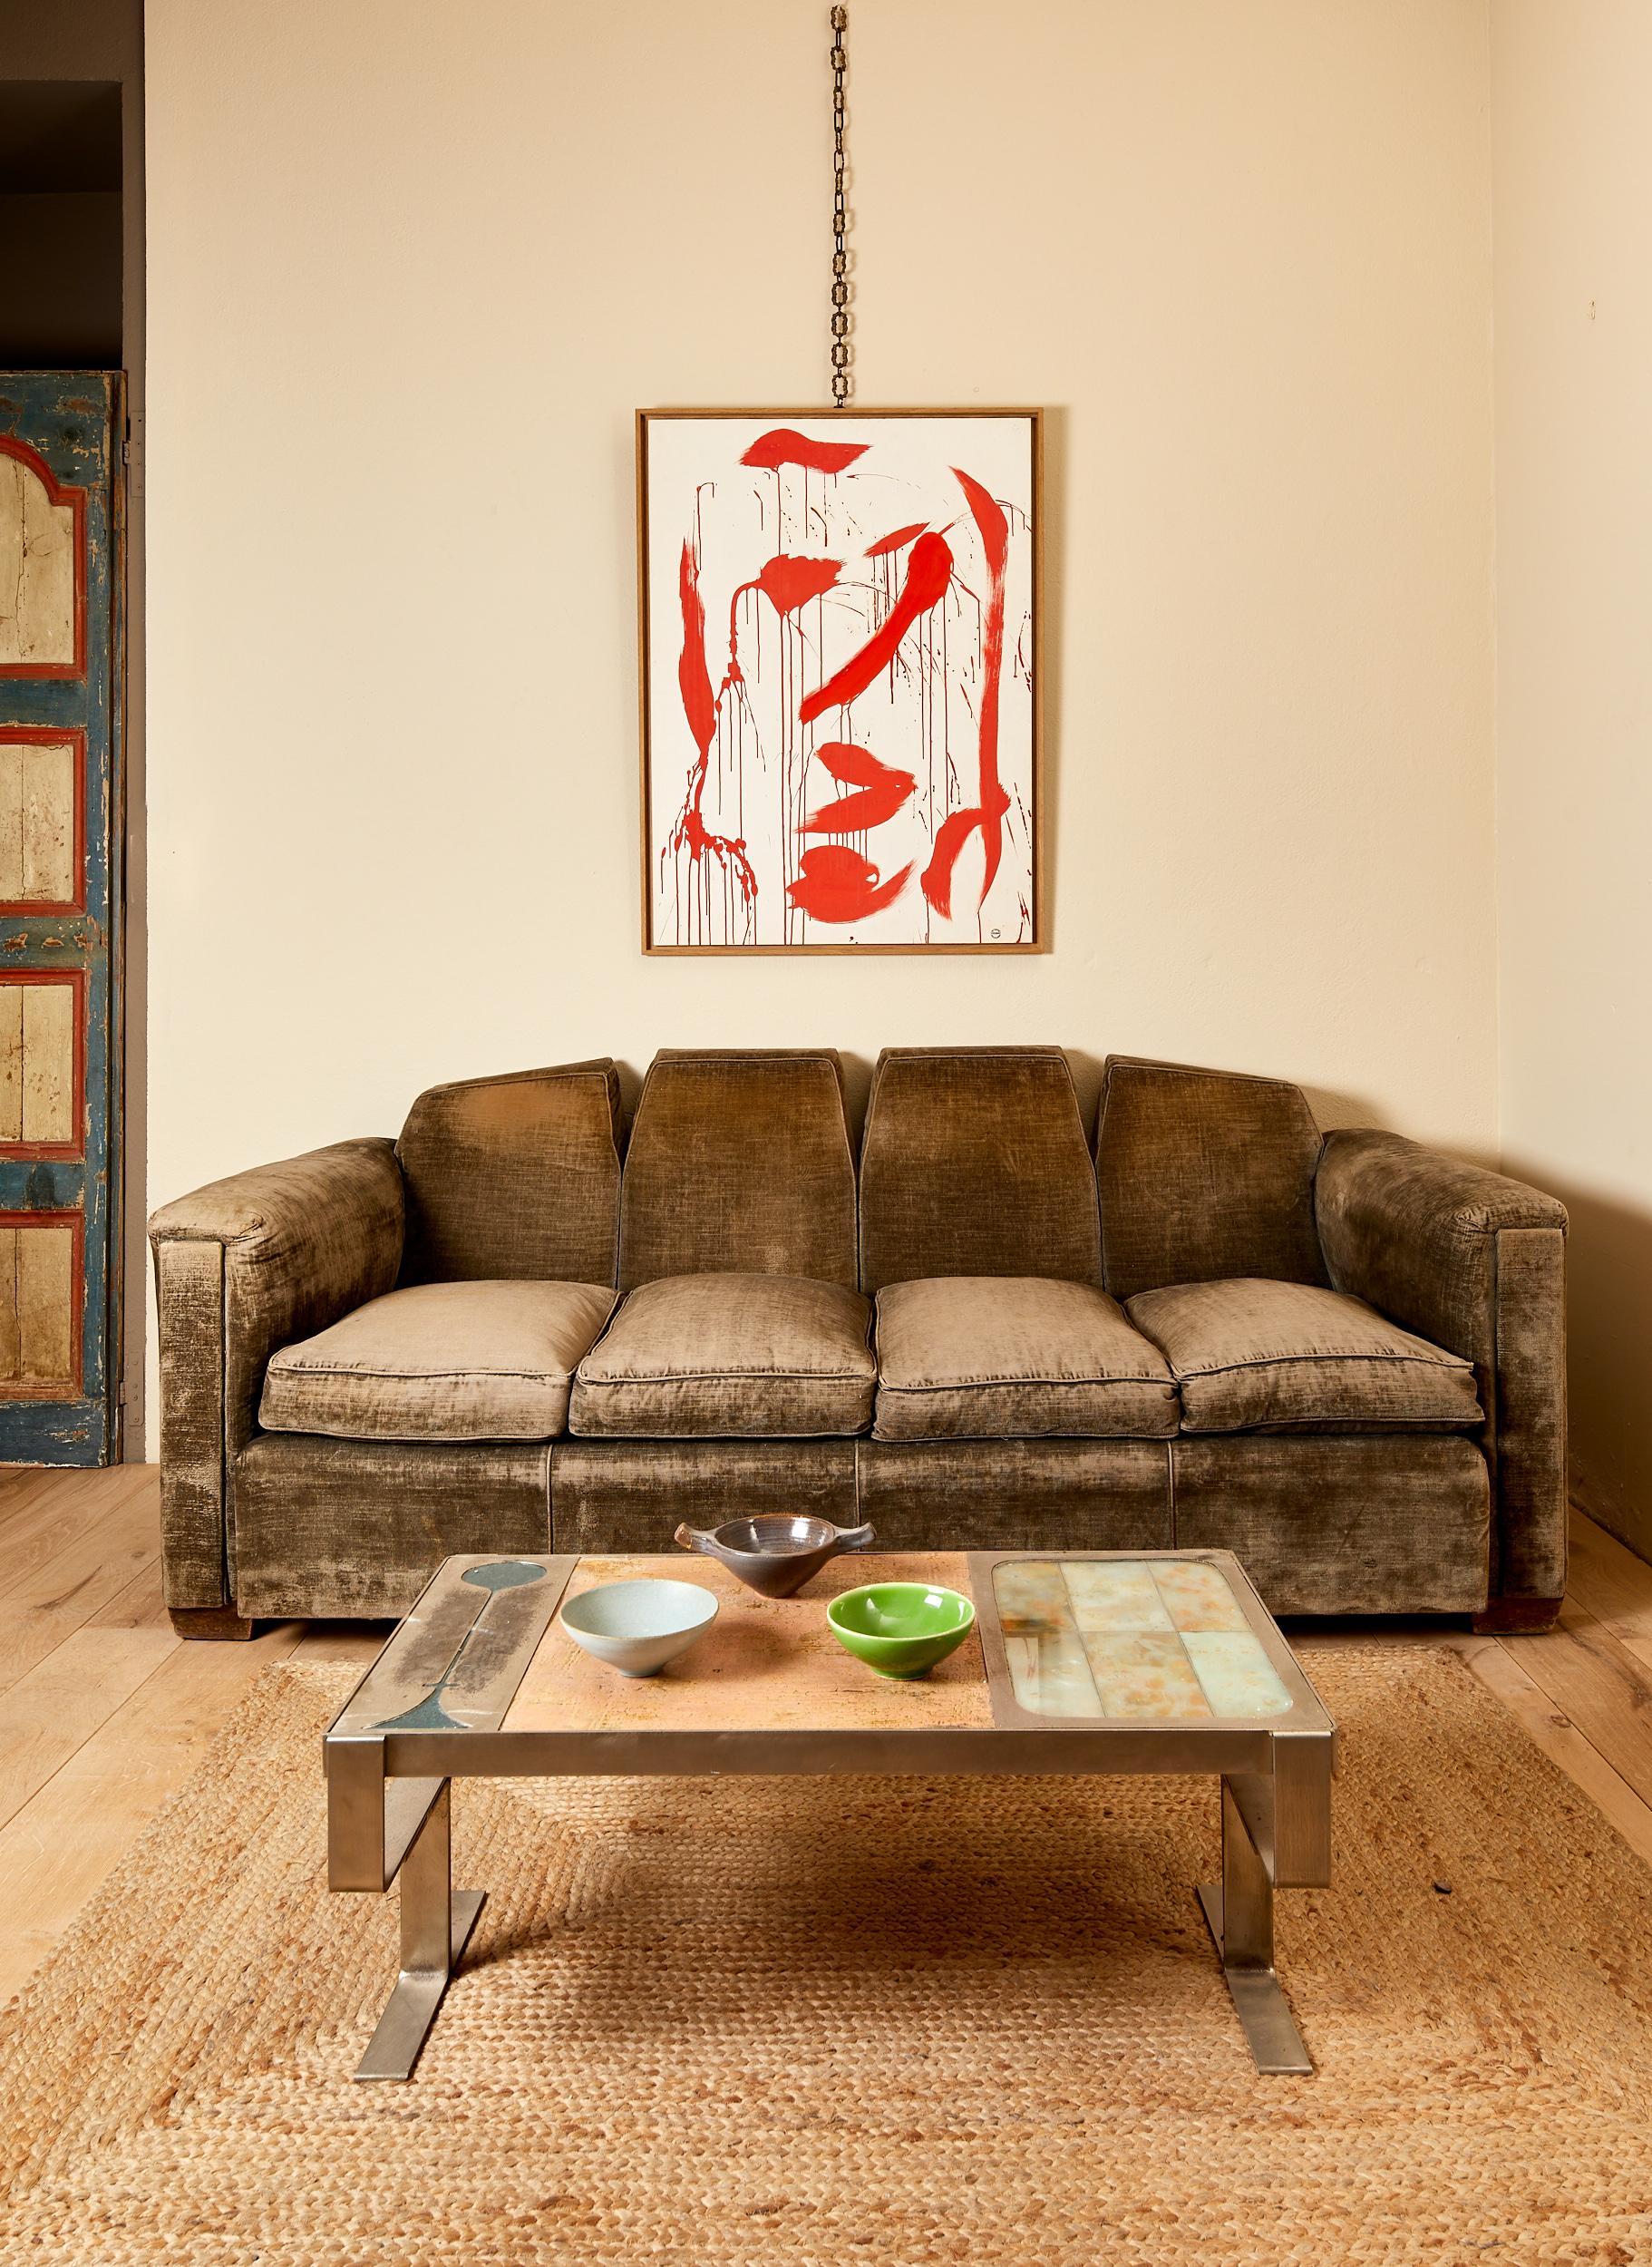 Nach dem Vorbild von Paul Dupré-Lafon,
Großes dreisitziges Sofa,
Der ursprüngliche graue Stoff muss neu gestaltet werden,
Frankreich, um 1930.

Maße: 217 x 94 x 85 cm.